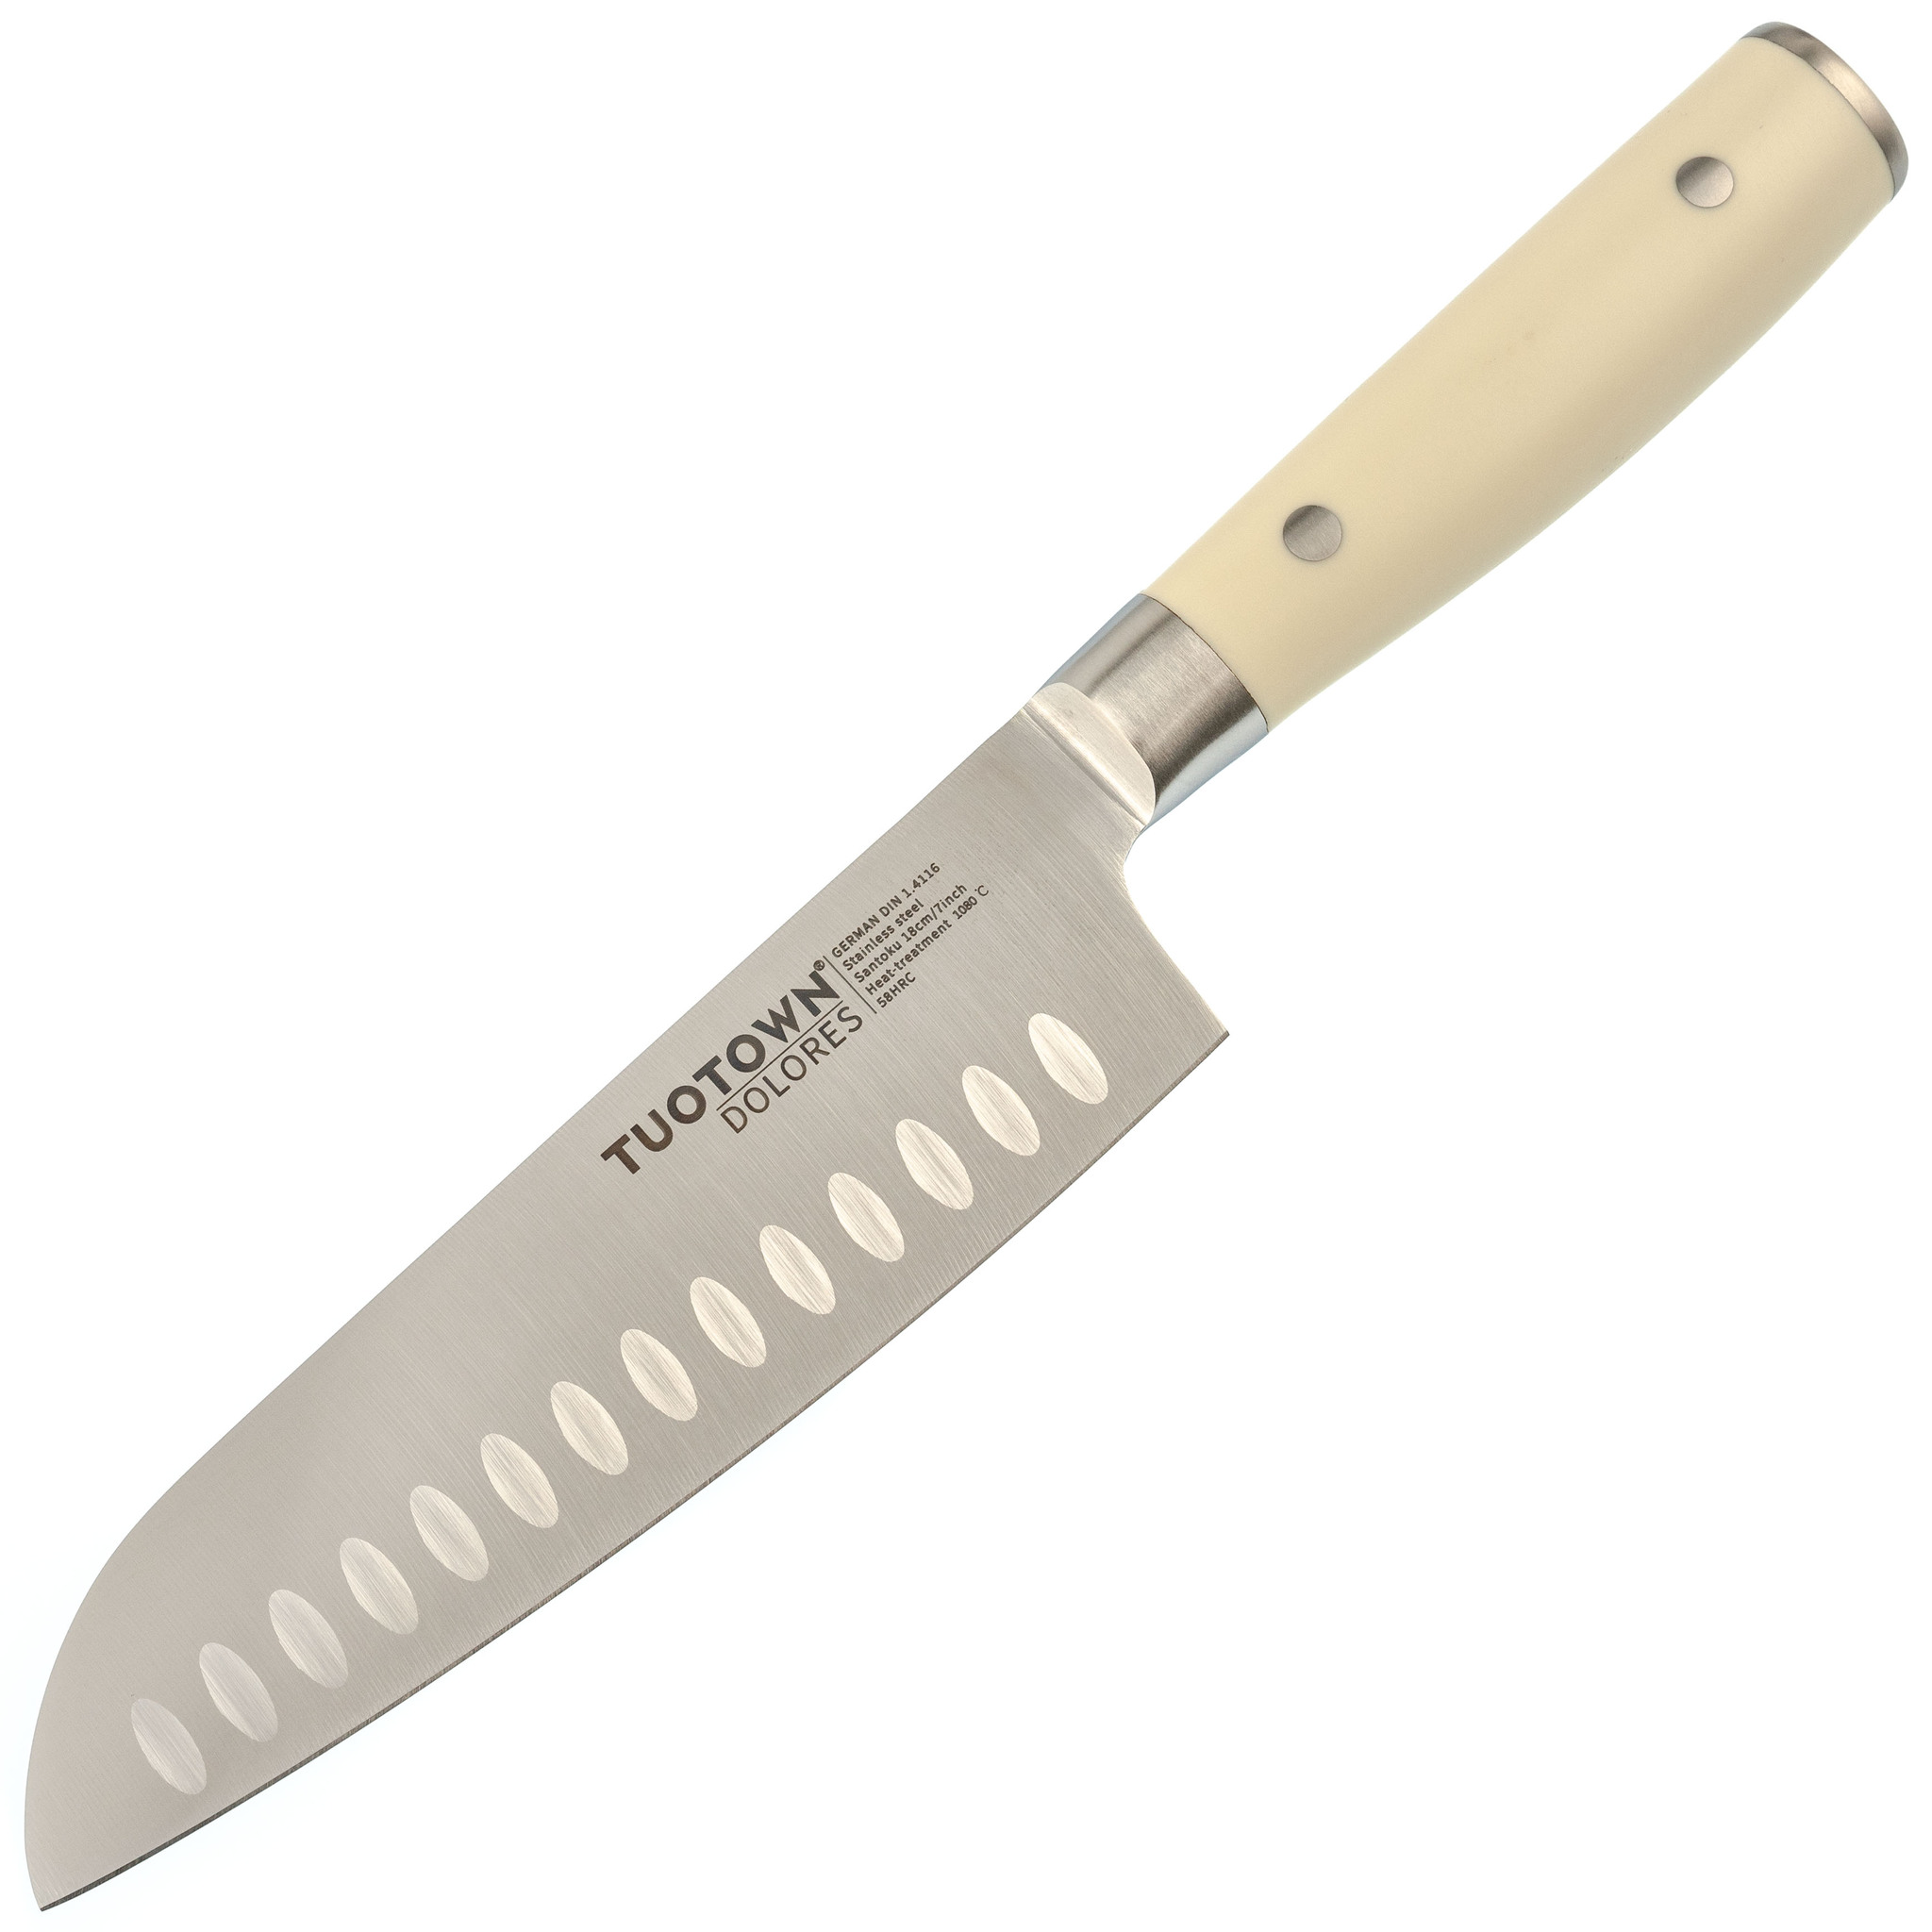 

Кухонный нож Сантоку Tuotown, серия DOLORES, сталь 1.4116